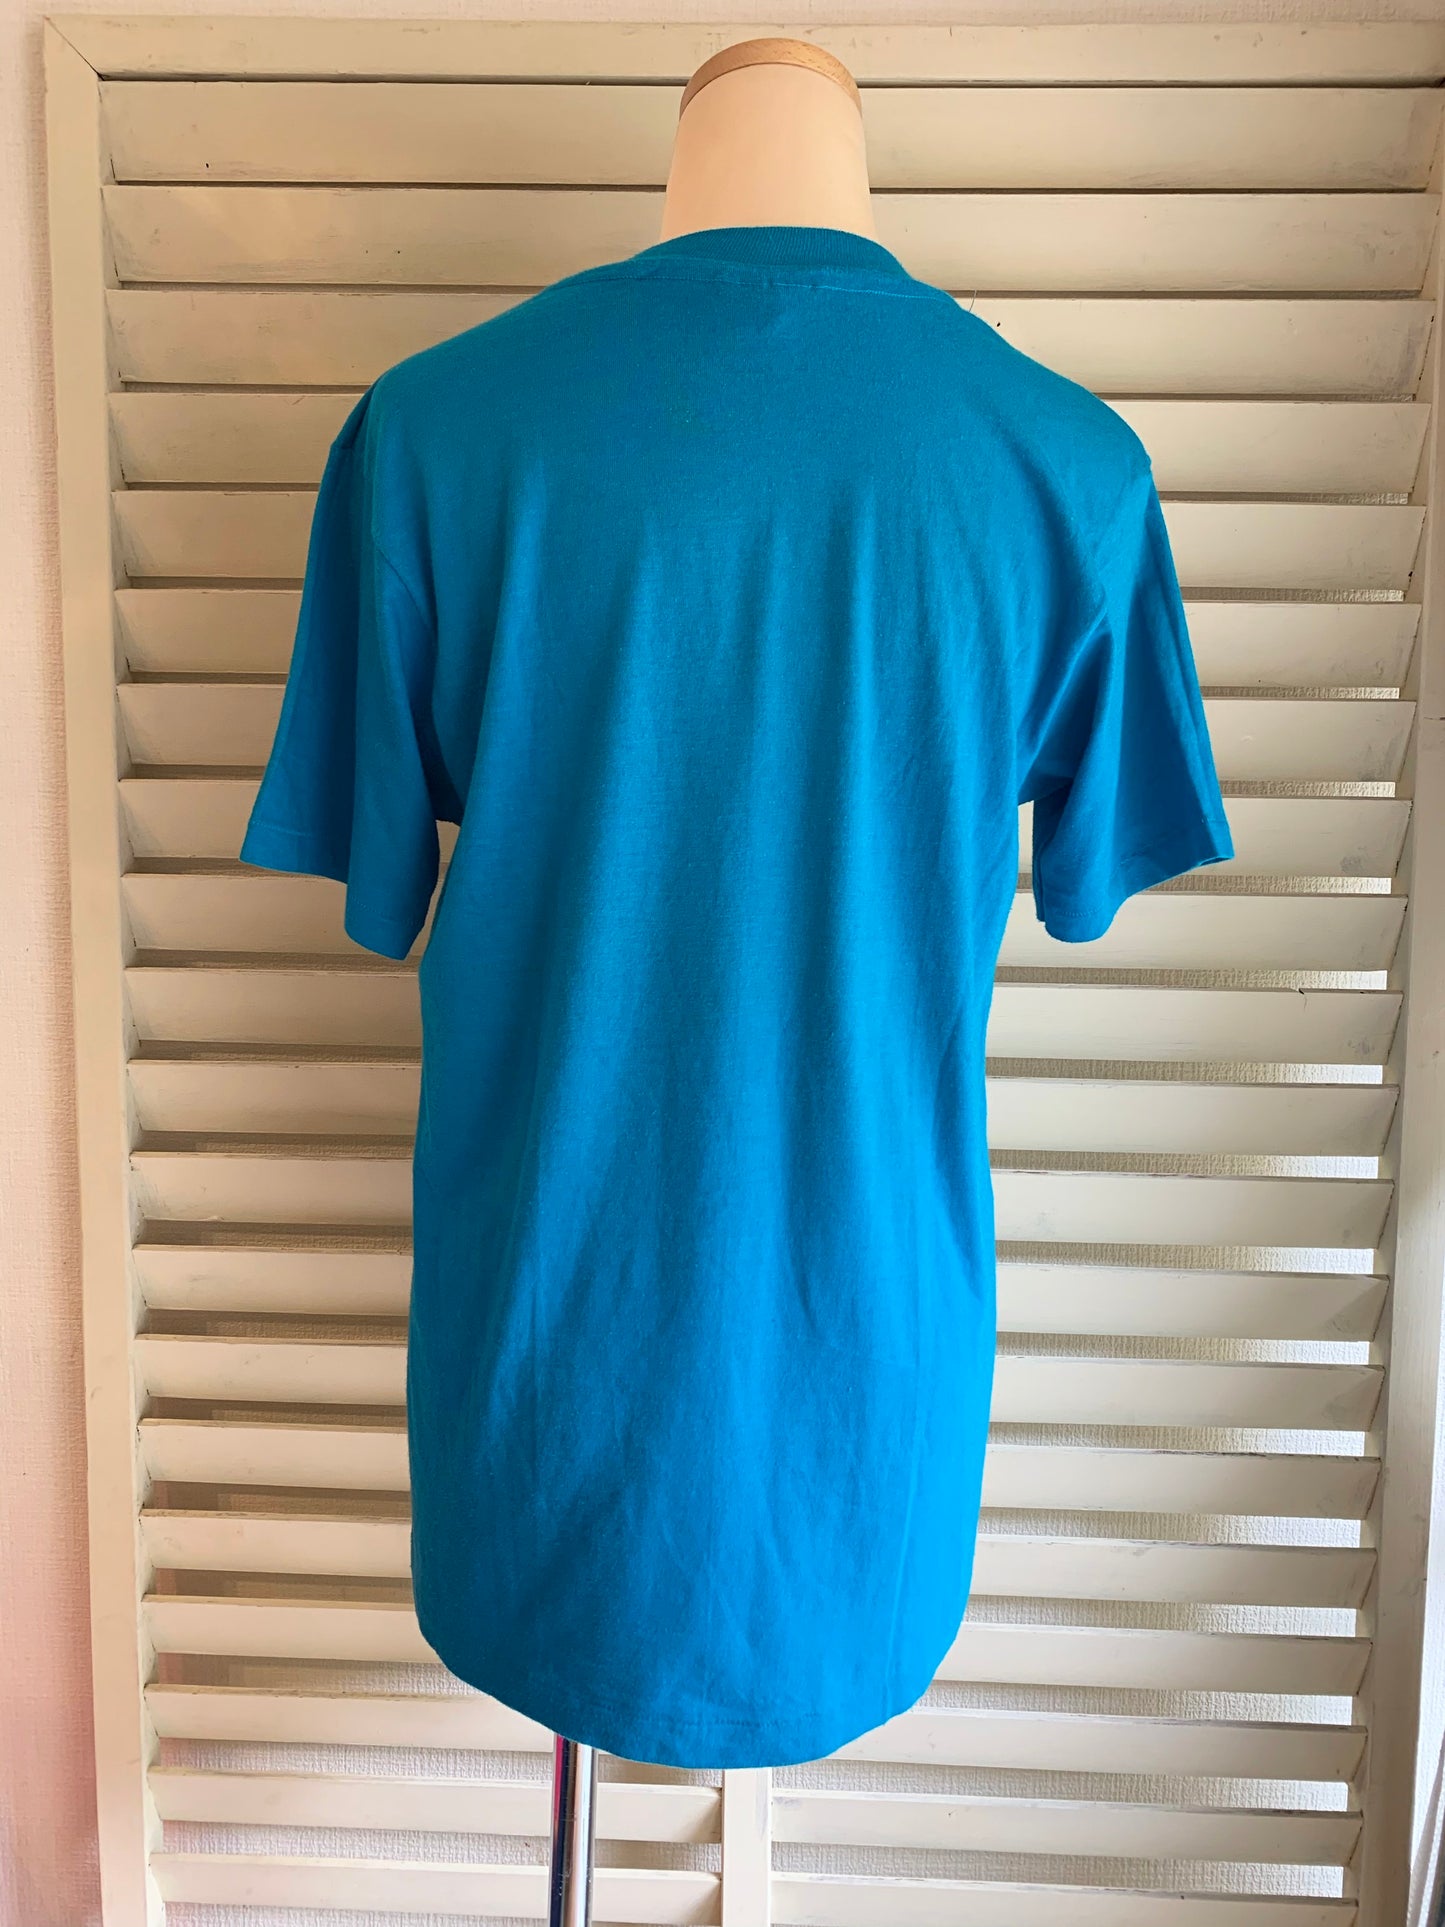 【Hanes】80s Hawaii USA製 スーベニア Tシャツ(men's M)